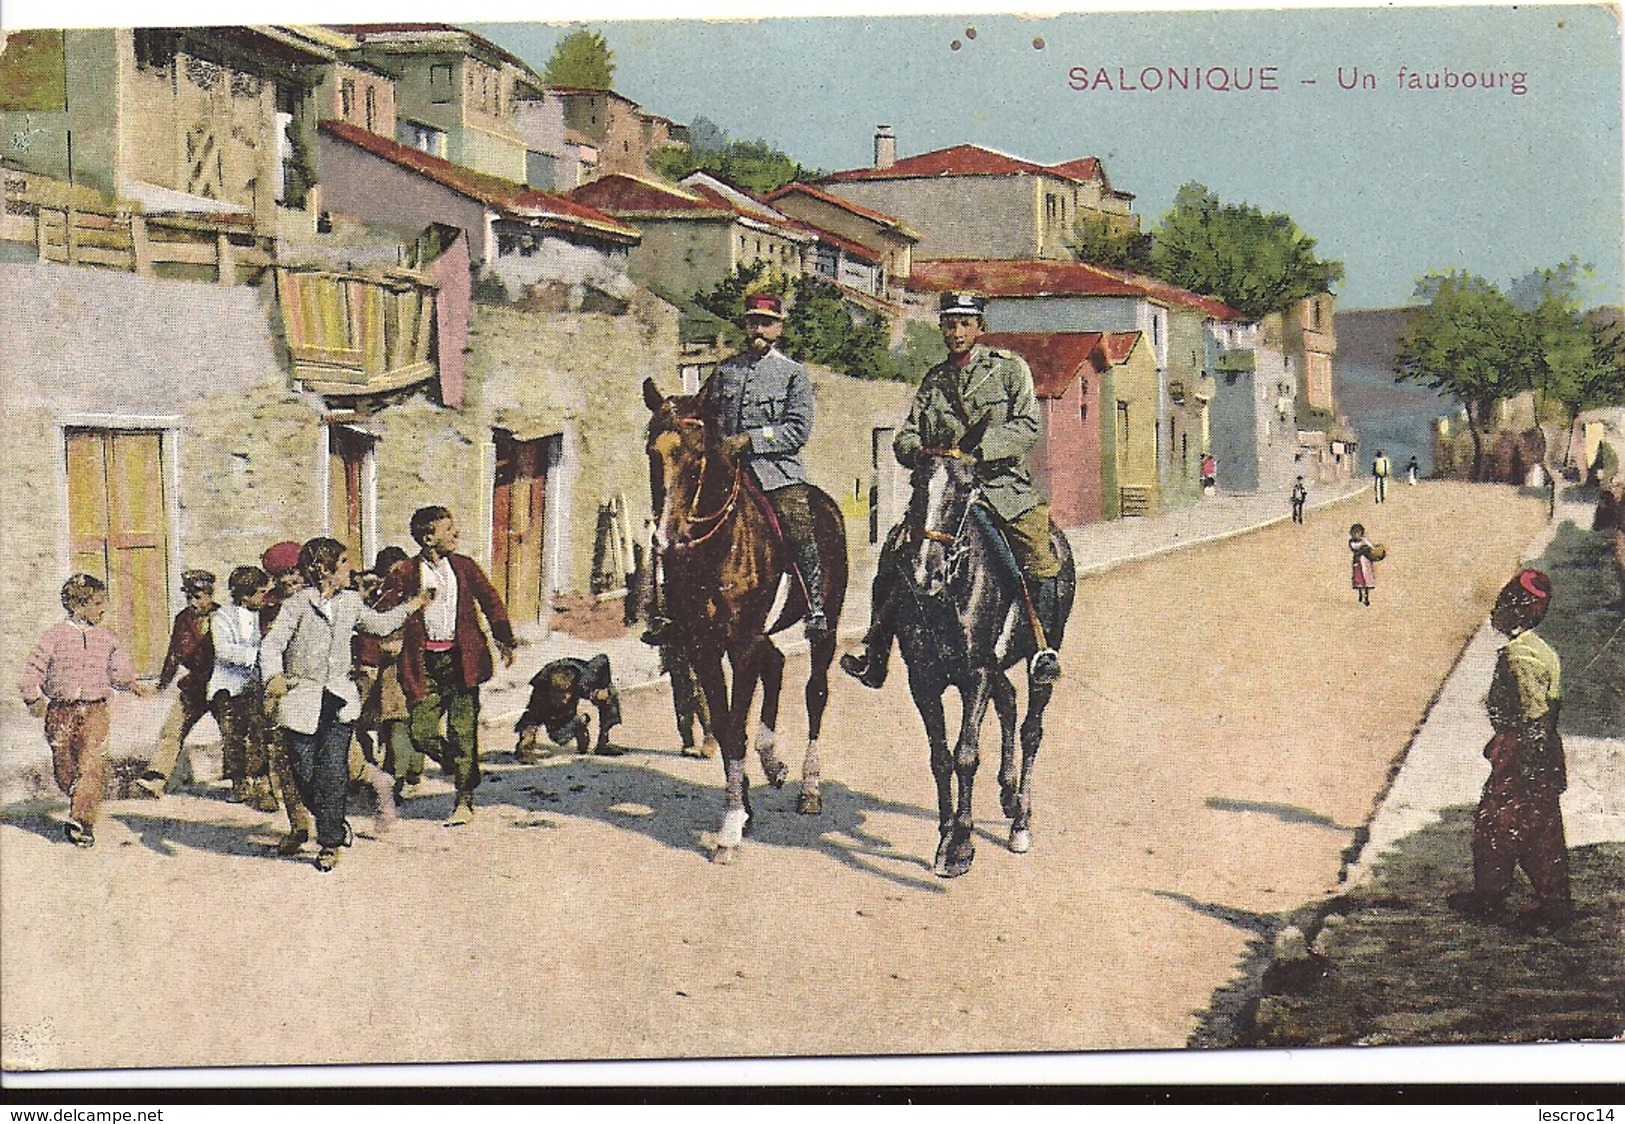 SALONIQUE Un Faubourg 1917 Correspondance Cardaillac Rouen - Greece